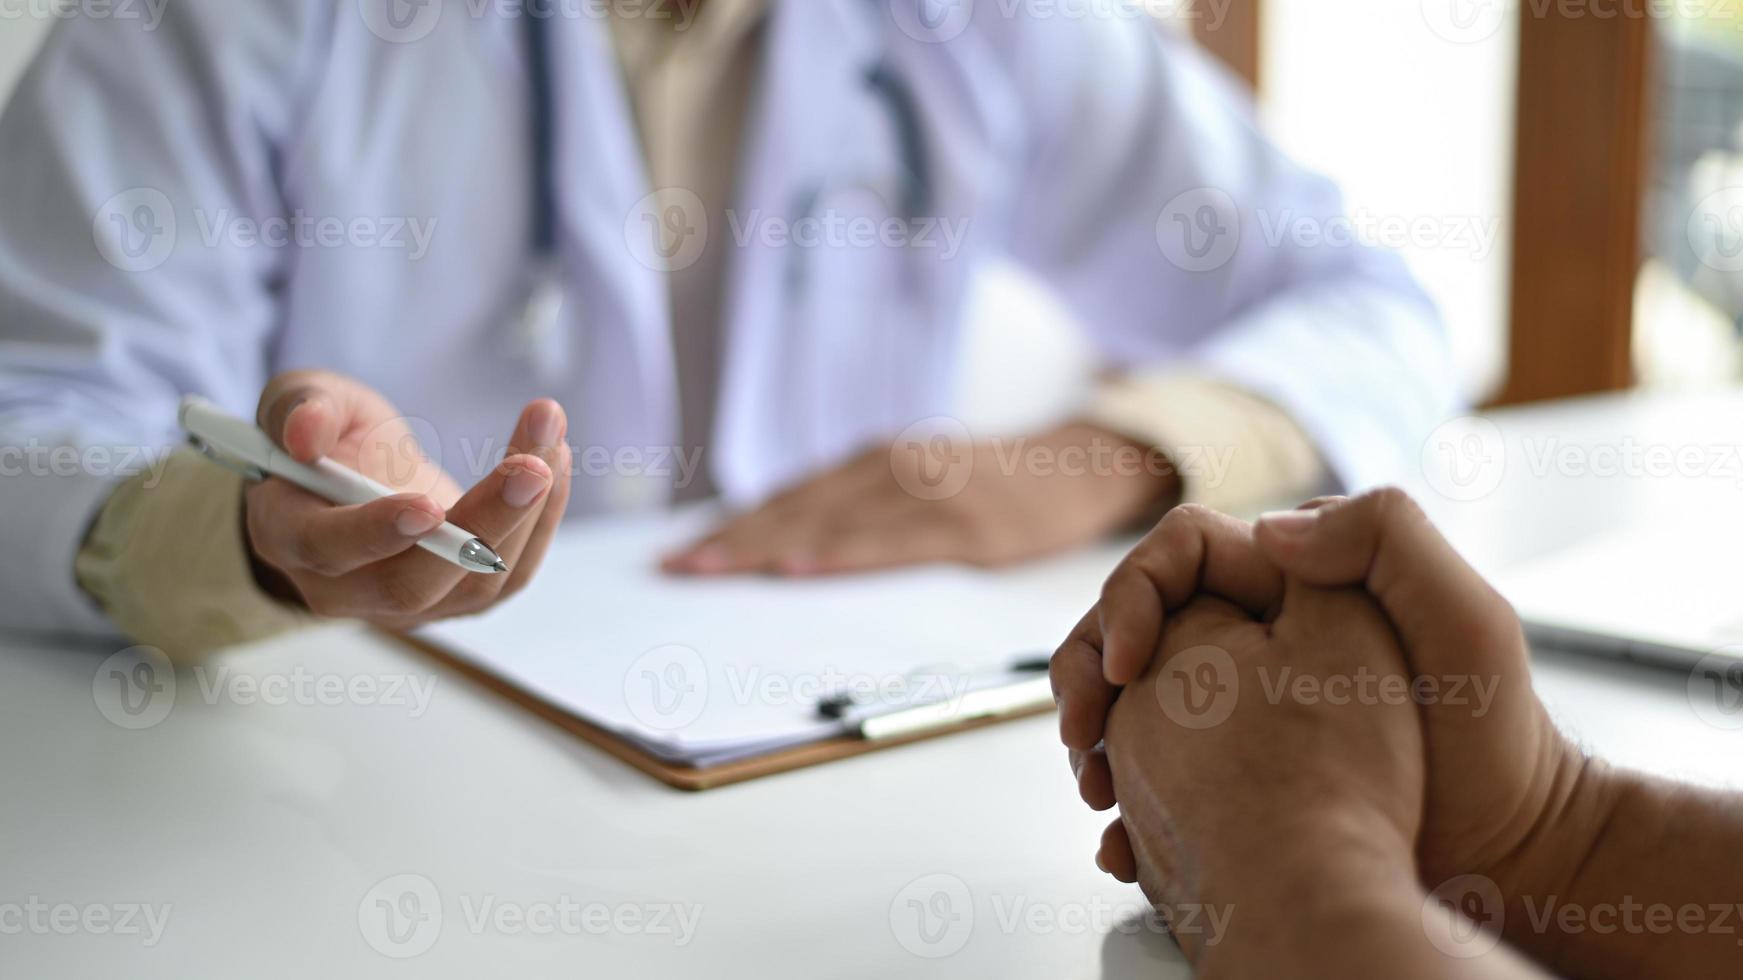 medisch concept, patiënten luisteren naar advies van medische professionals. foto